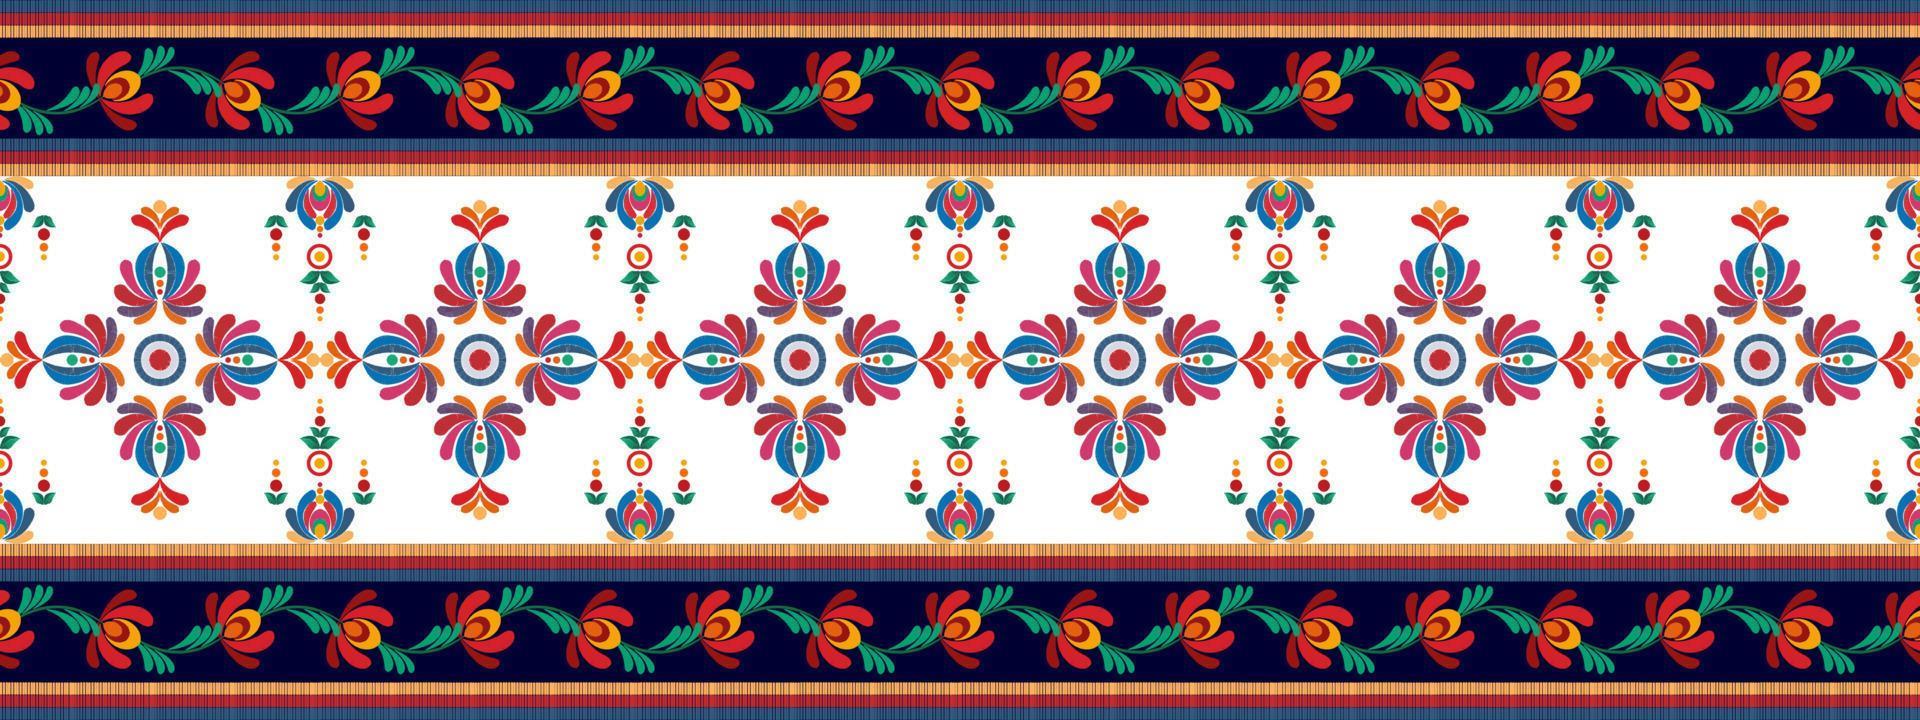 ikat design de decoração étnica padrão sem emenda. tecido asteca tapete boho mandalas têxtil decoração papel de parede. ornamentos de motivo nativo tribal ikkat bordado tradicional vetor húngaro polonês moravia